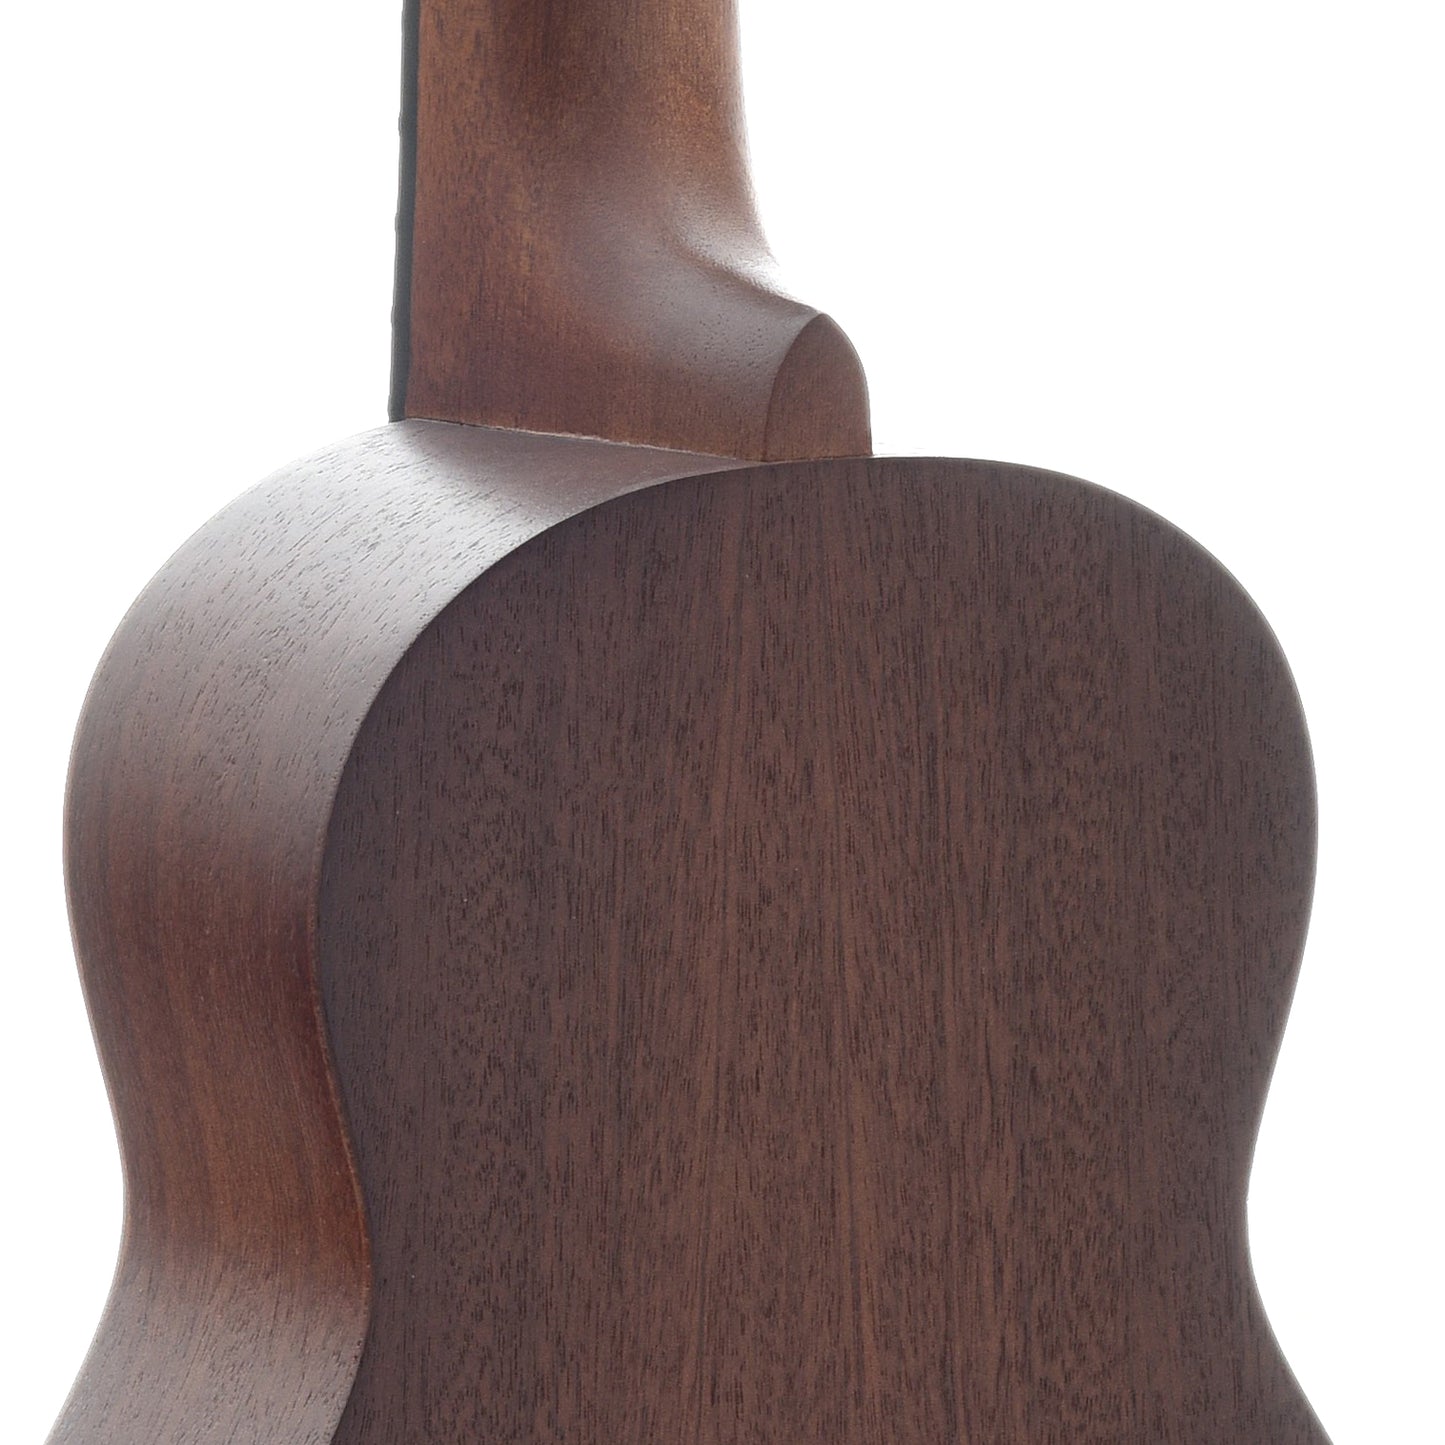 Image 8 of Kala KA-15S Soprano Ukulele (recent) - SKU# 180U-204543 : Product Type Soprano Ukuleles : Elderly Instruments